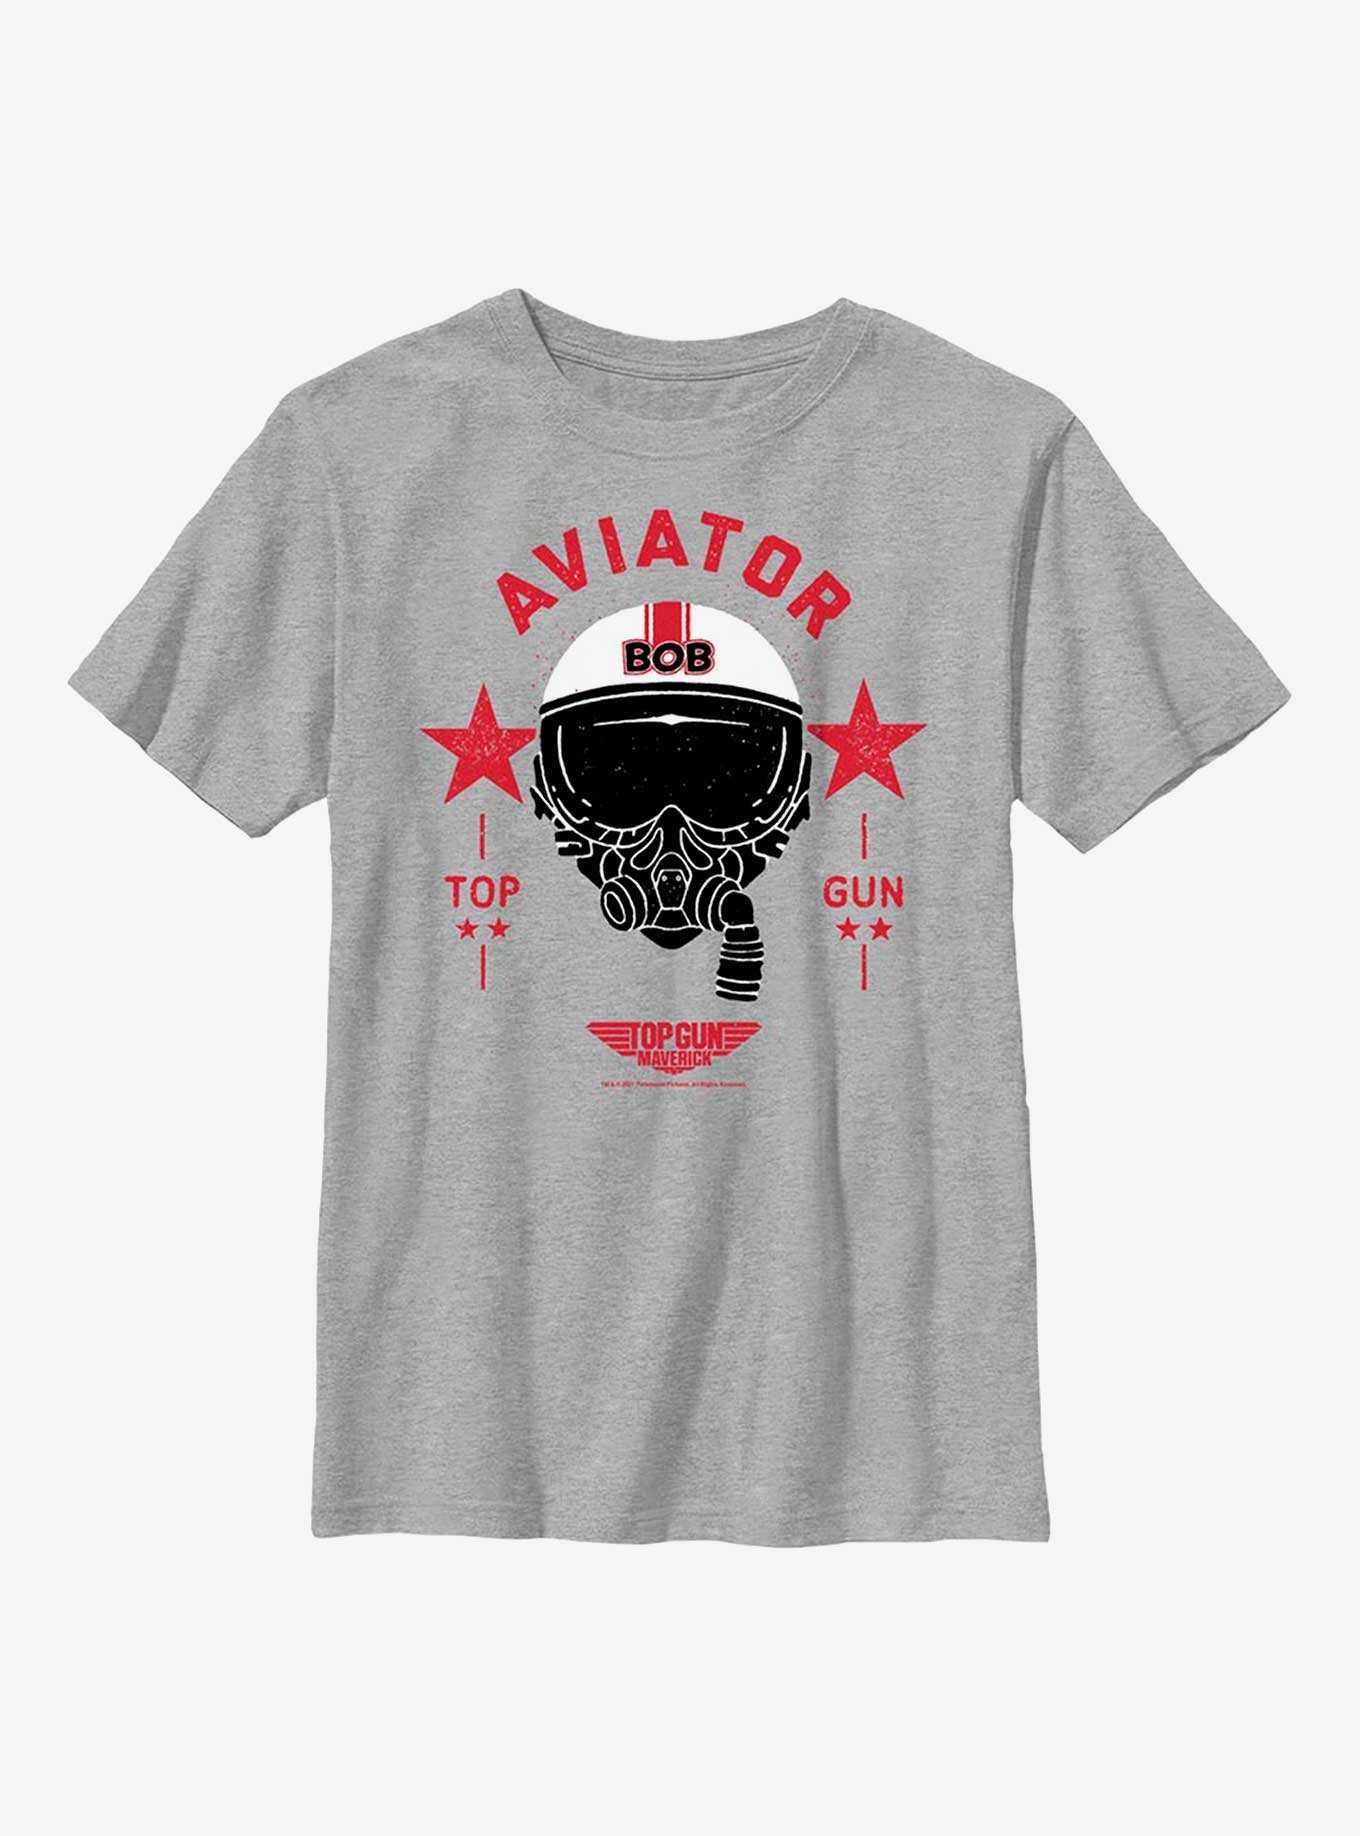 Top Gun: Maverick Bob Aviator Youth T-Shirt, , hi-res